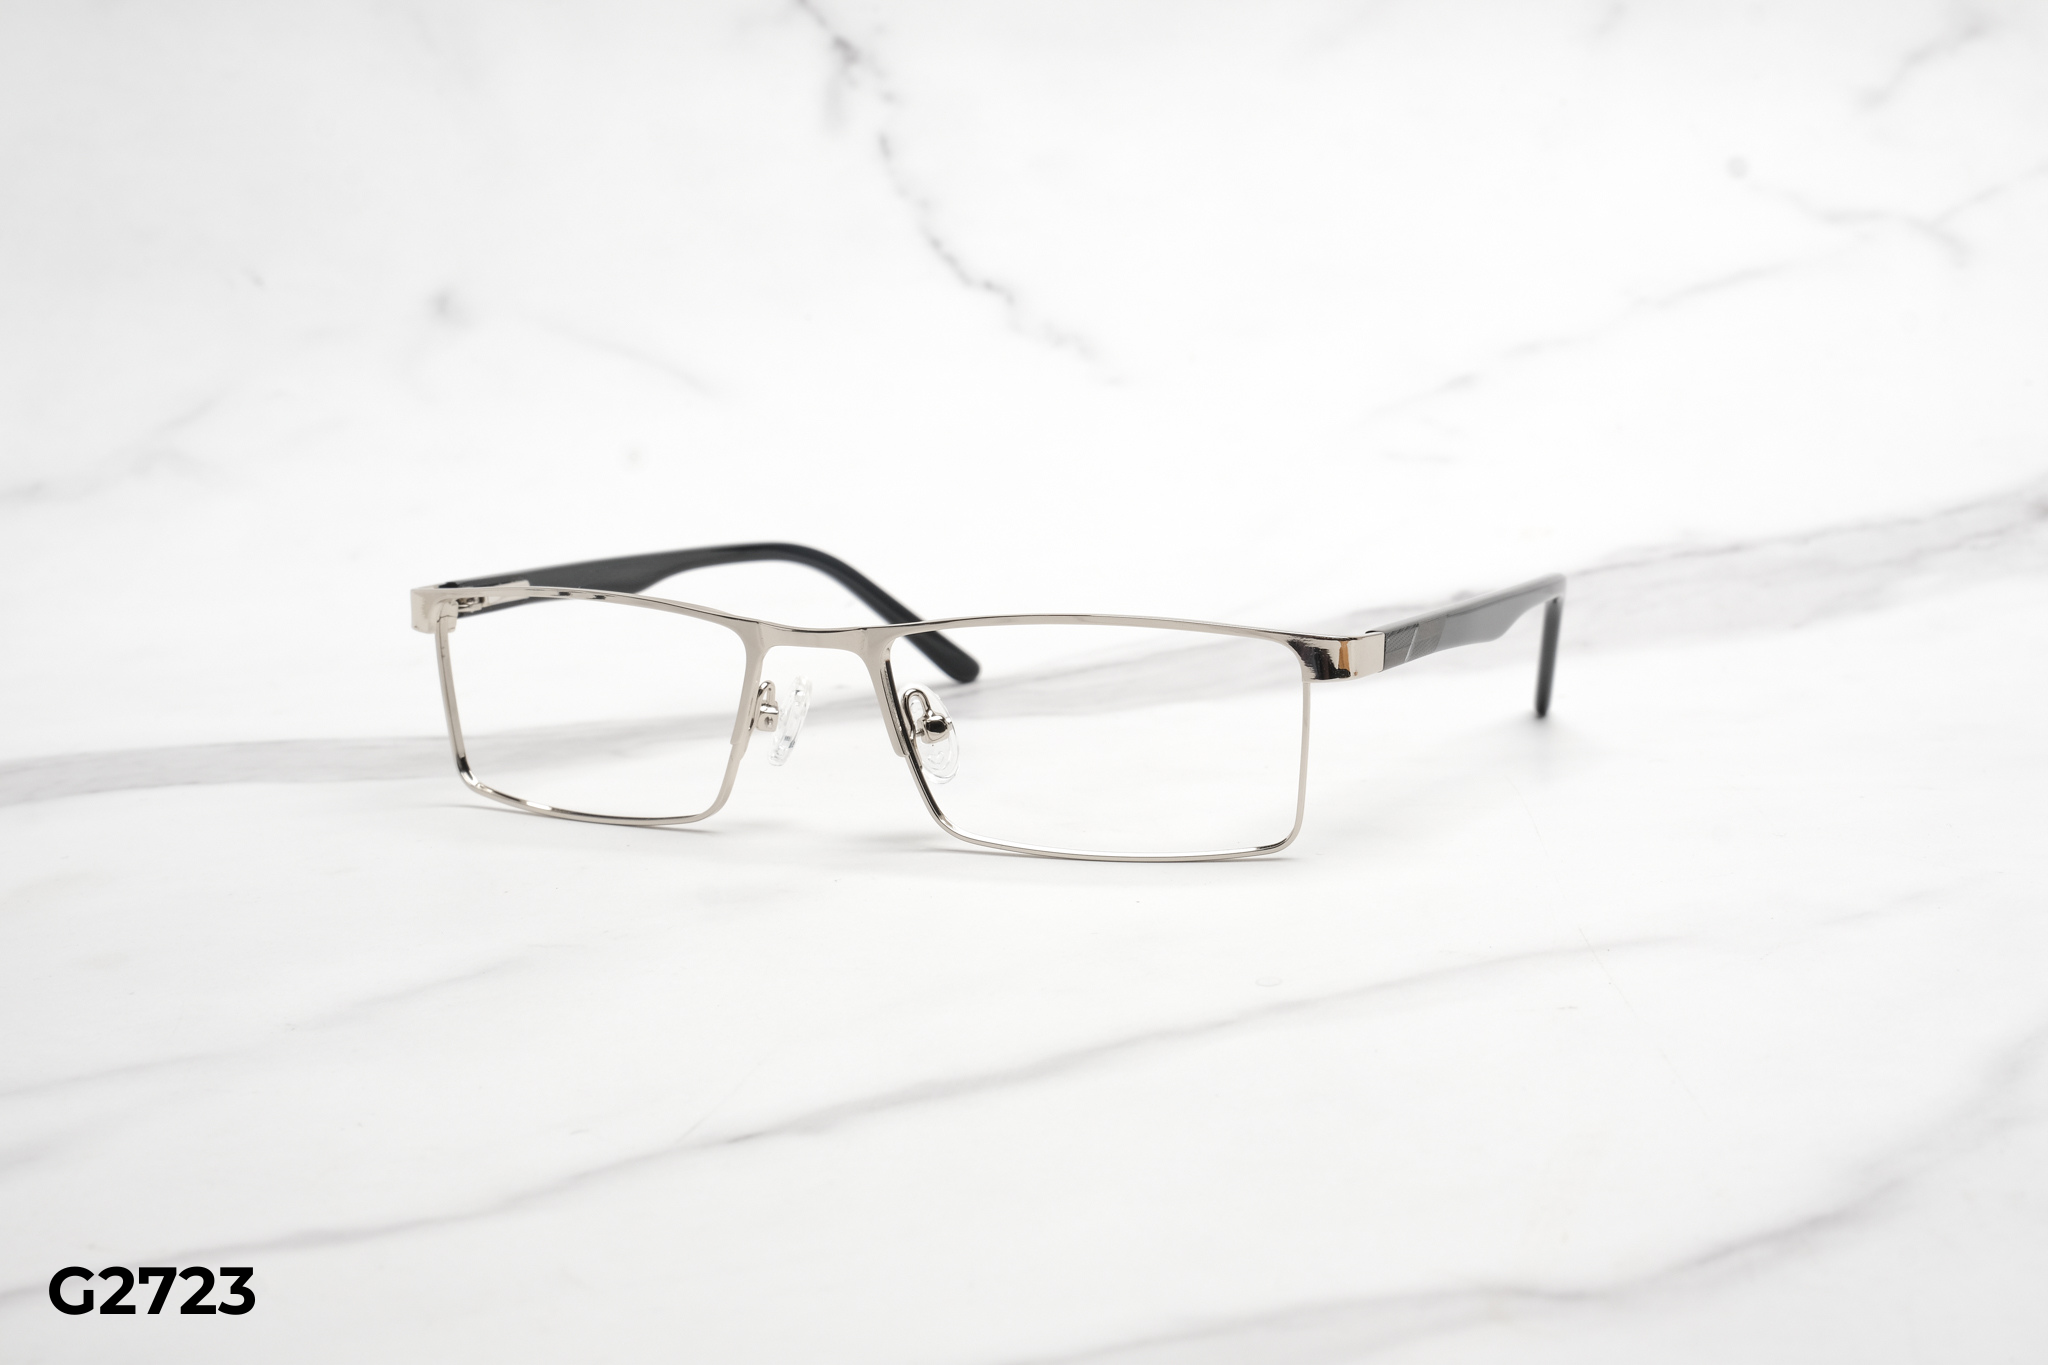  Rex-ton Eyewear - Glasses - G2723 